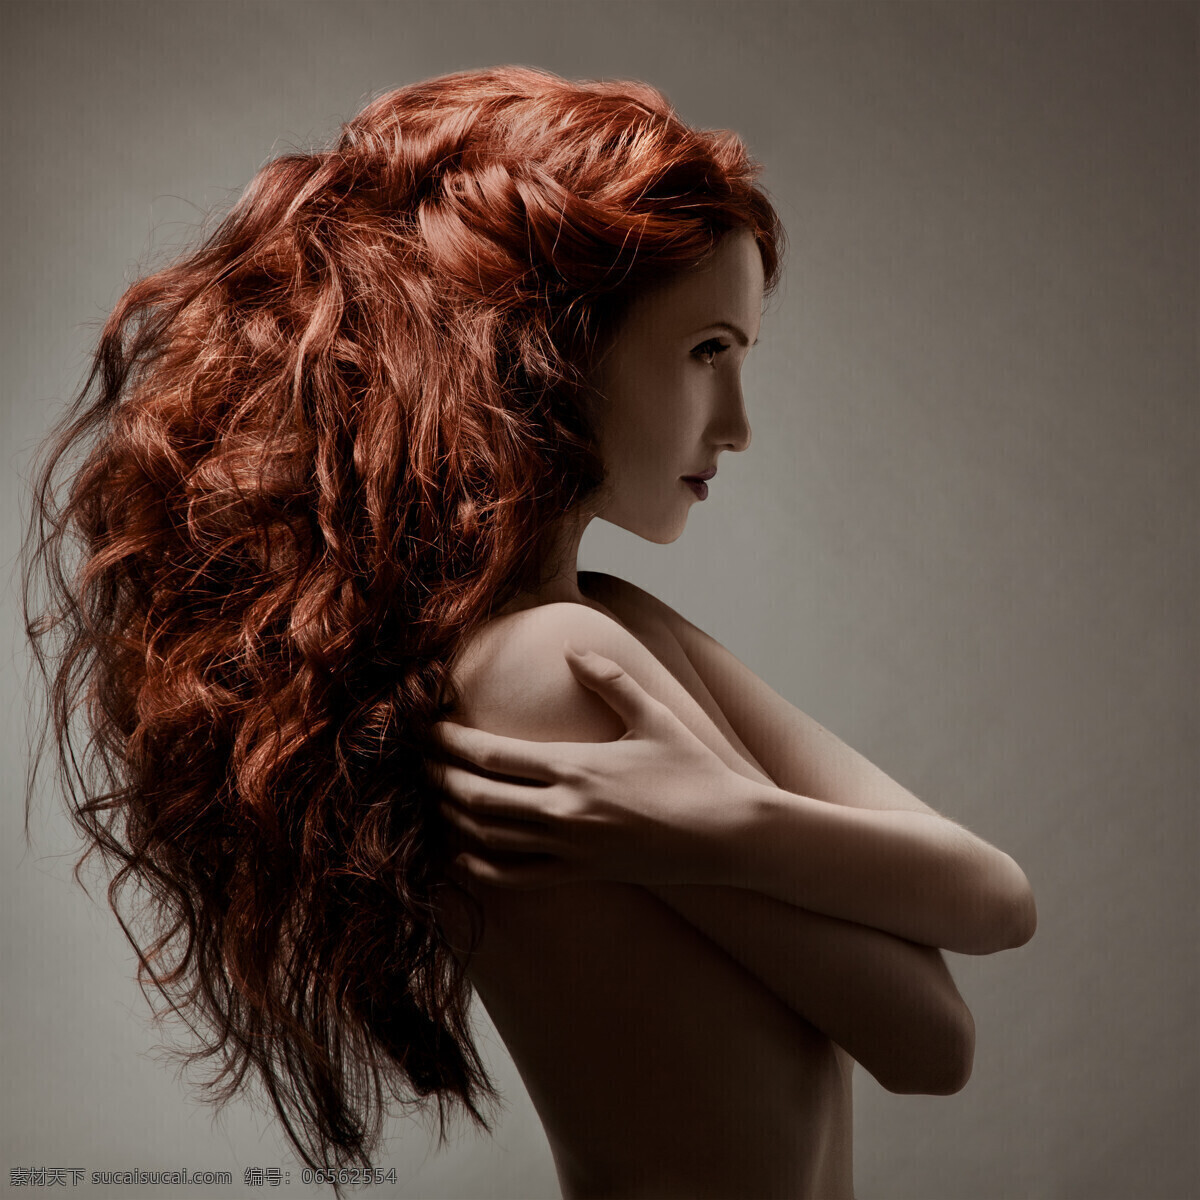 长头 发 女人 外国女人 红发 倦发 动作 双手抱胸 美女图片 人物图片